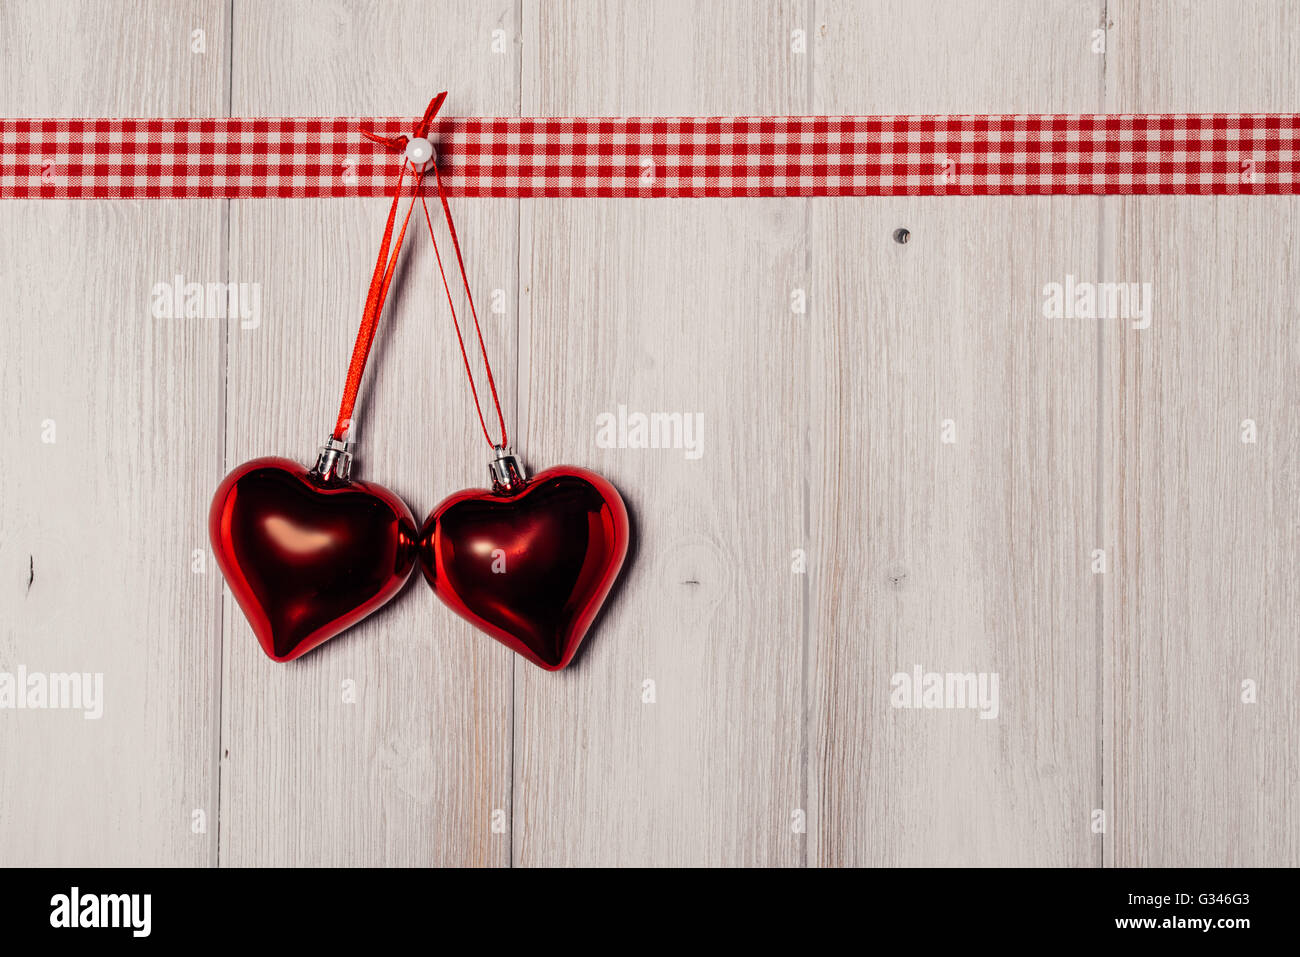 Forme coeurs sur fond de bois vintage, décorer la Saint-Valentin Banque D'Images